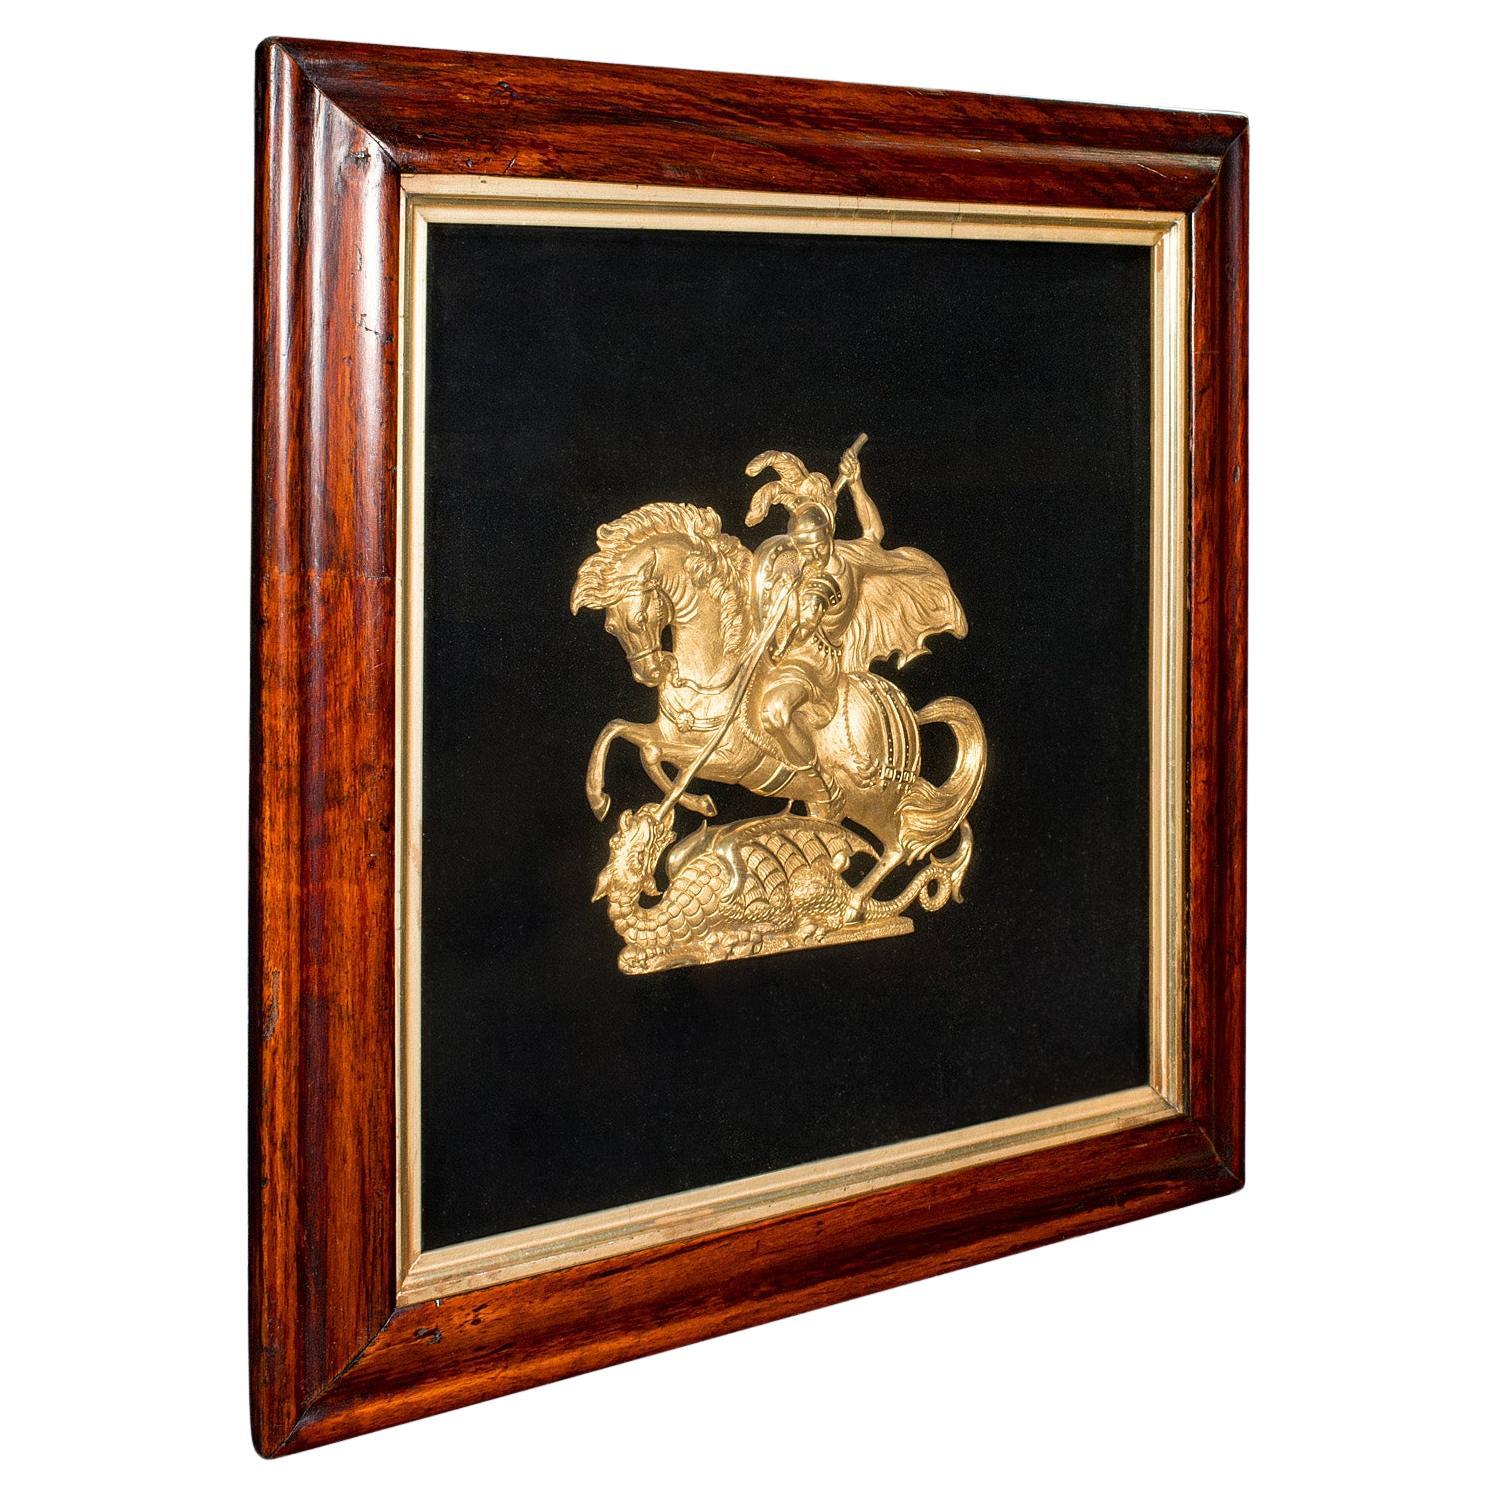 Antike George & der Drache-Vitrinenplakette, englisch, dekoratives Relief, Regency